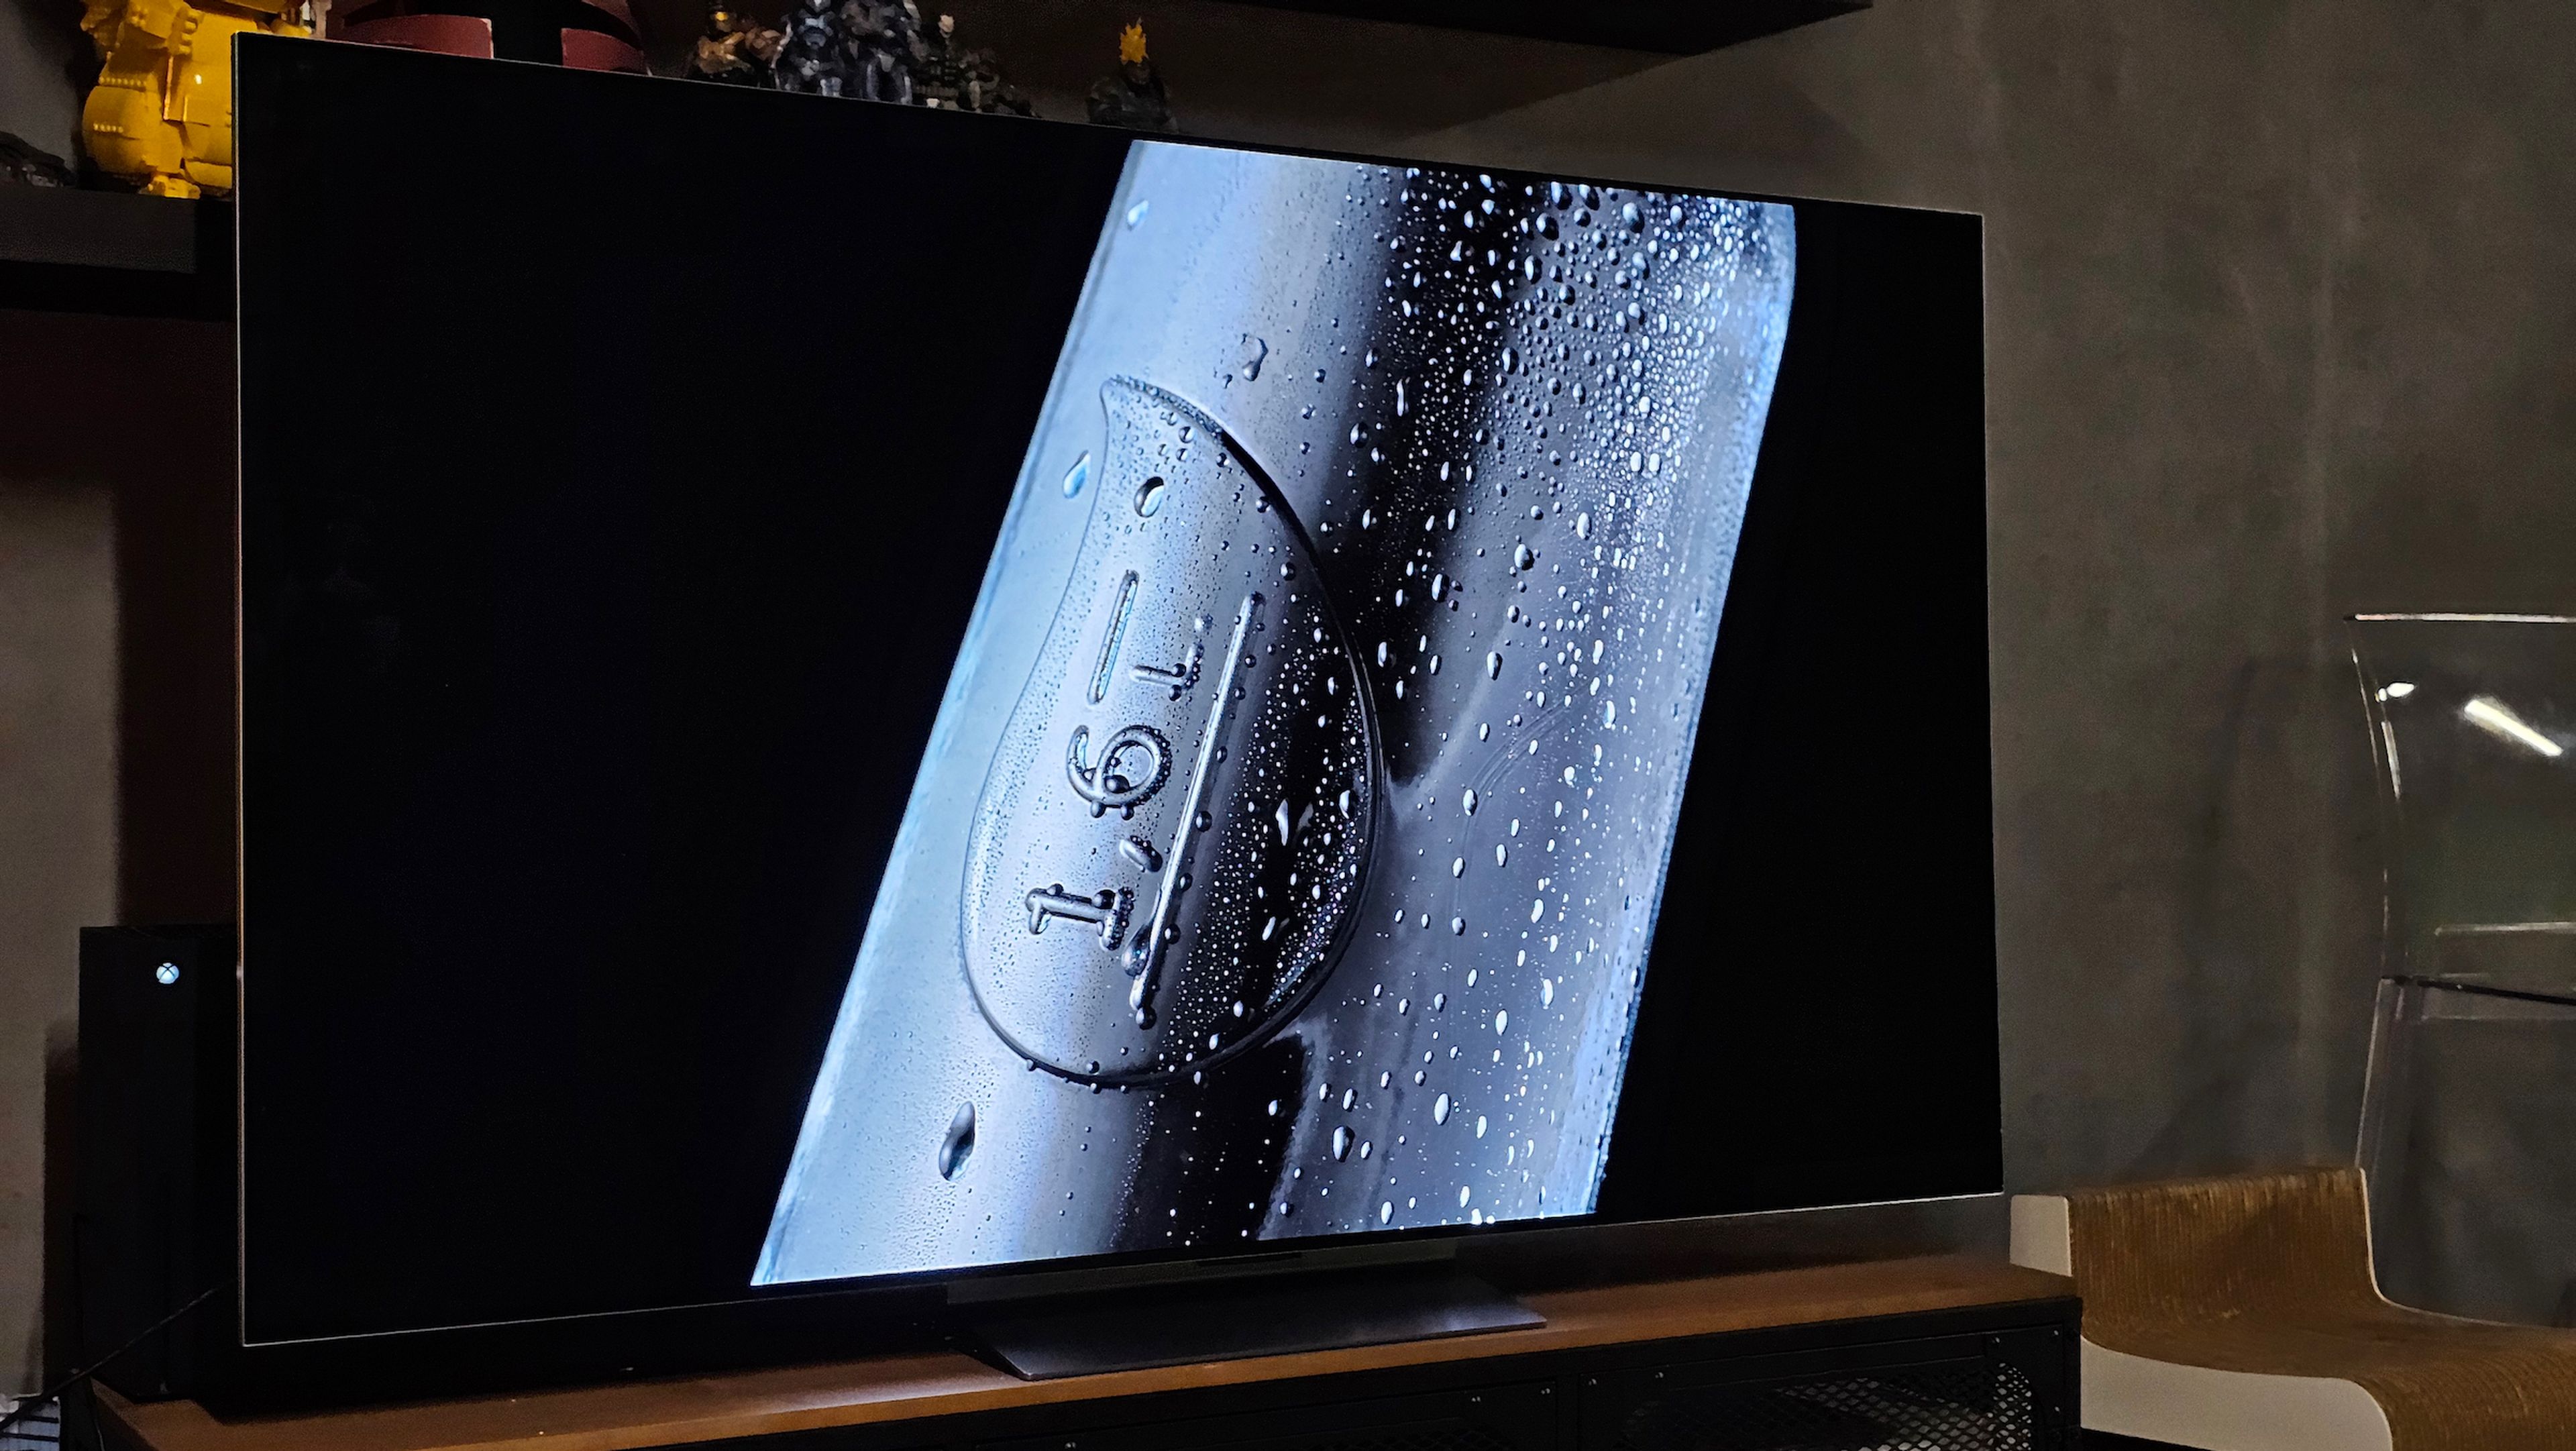 LG OLED TV evo G3, análisis y opinión: seguramente el mejor modelo